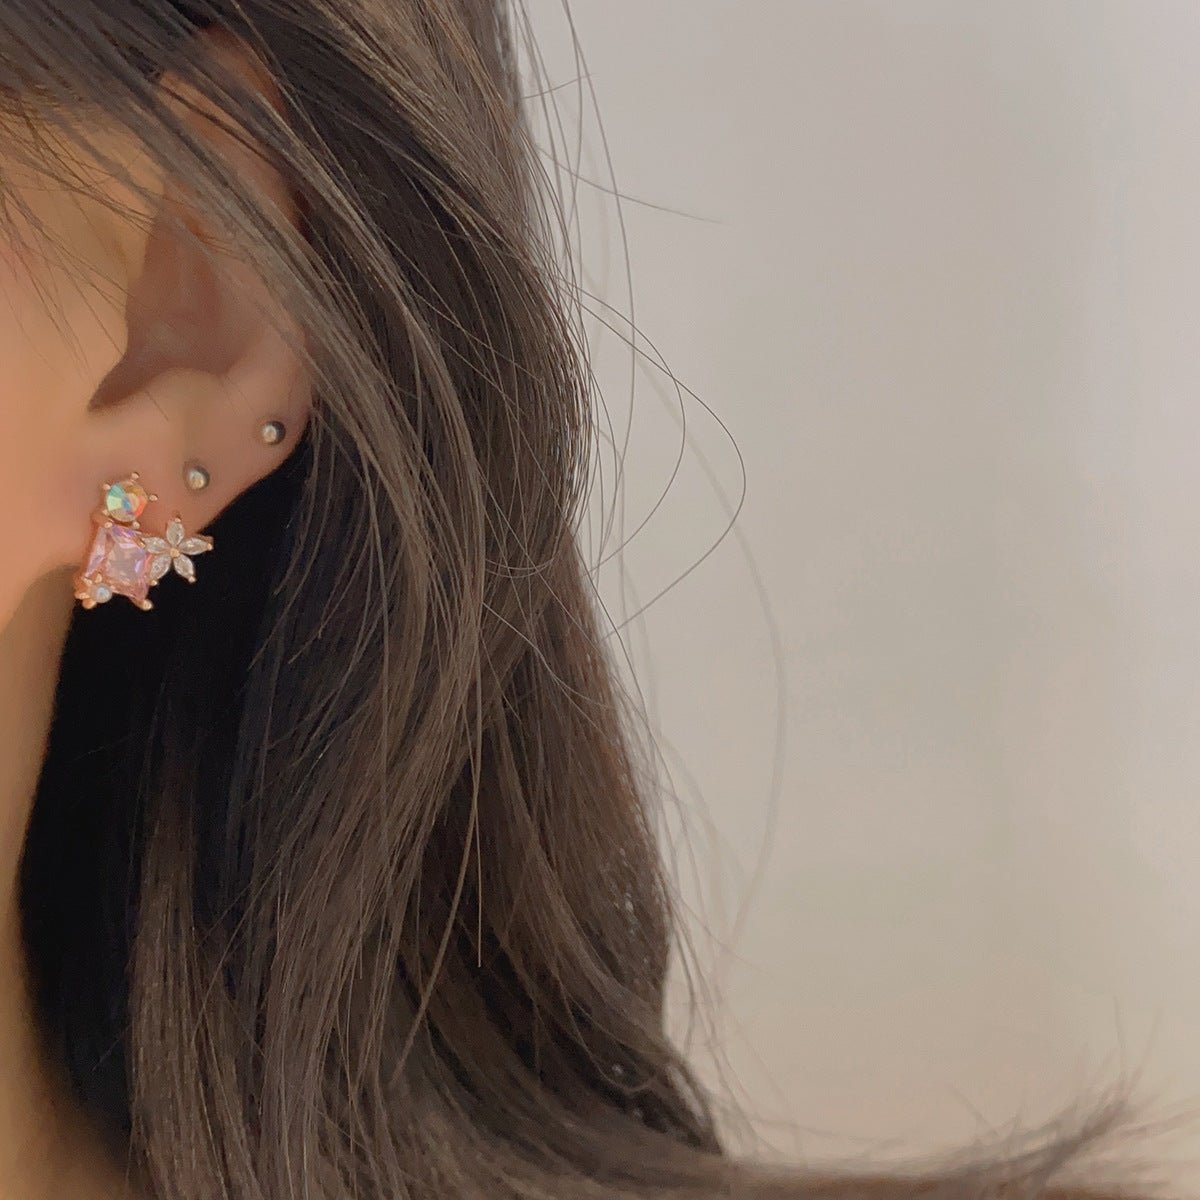 Pink Gem Flower Stud Earrings - Alicia - Hypoallergenic - Abbott Atelier